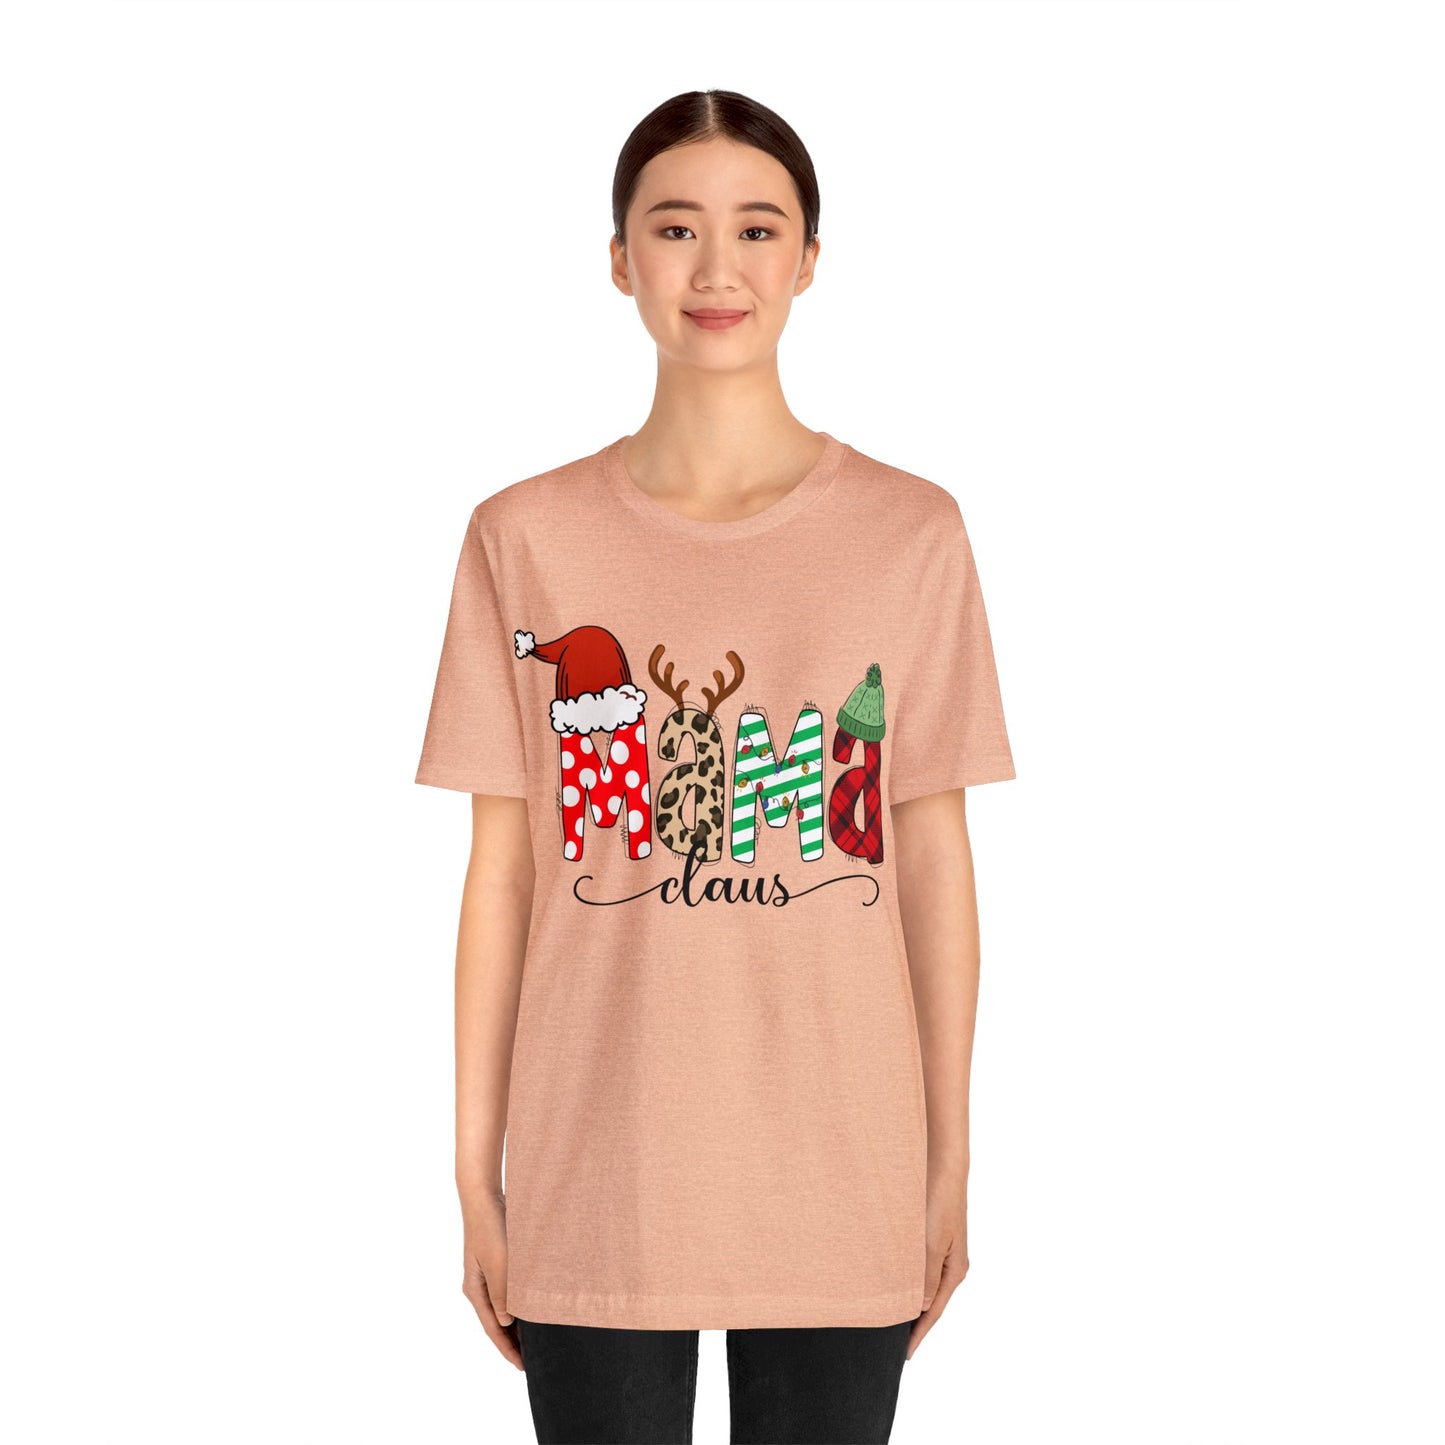 Mama Claus Christmas T-Shirt, Cute Mom Christmas Tee, Winter Holiday Shirt for Mother, Christmas Gift idea for Mom, Mom Christmas Clothes - Teez Closet